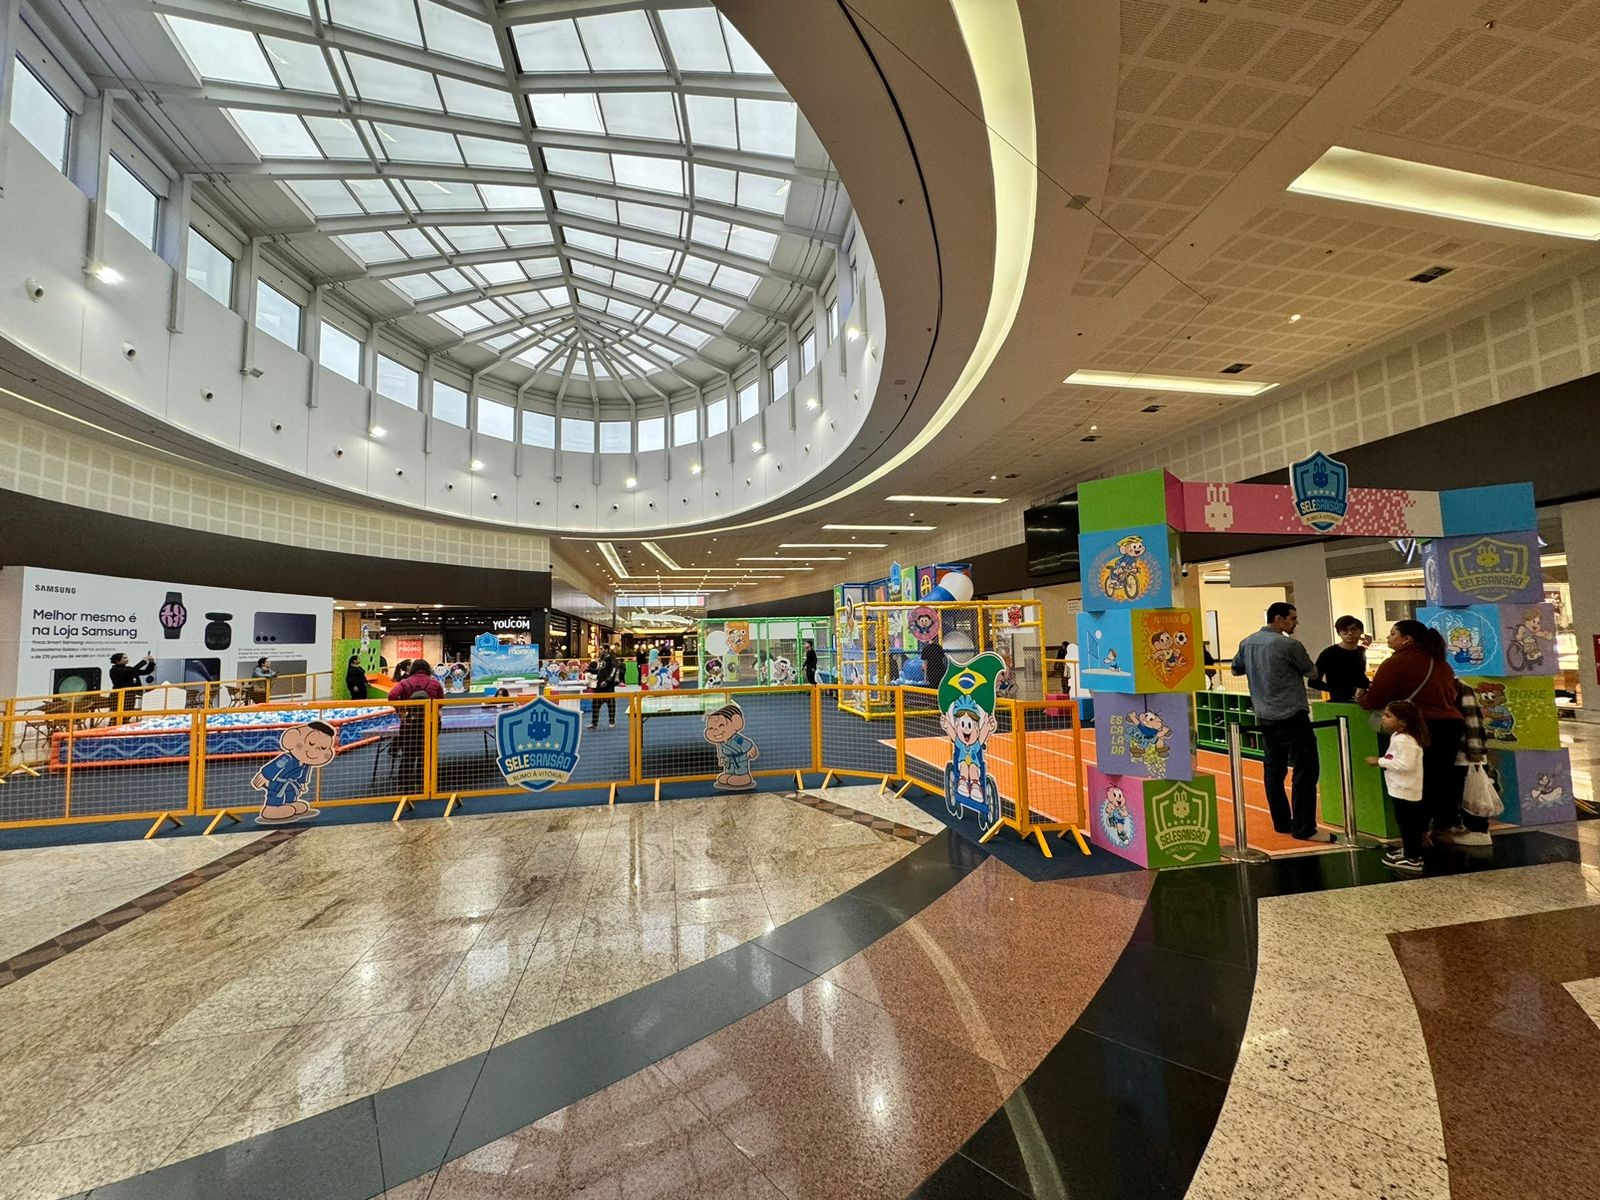 Brinquedos infláveis, esportes e arena gamer: veja atrações de férias nos shoppings de São José e Taubaté